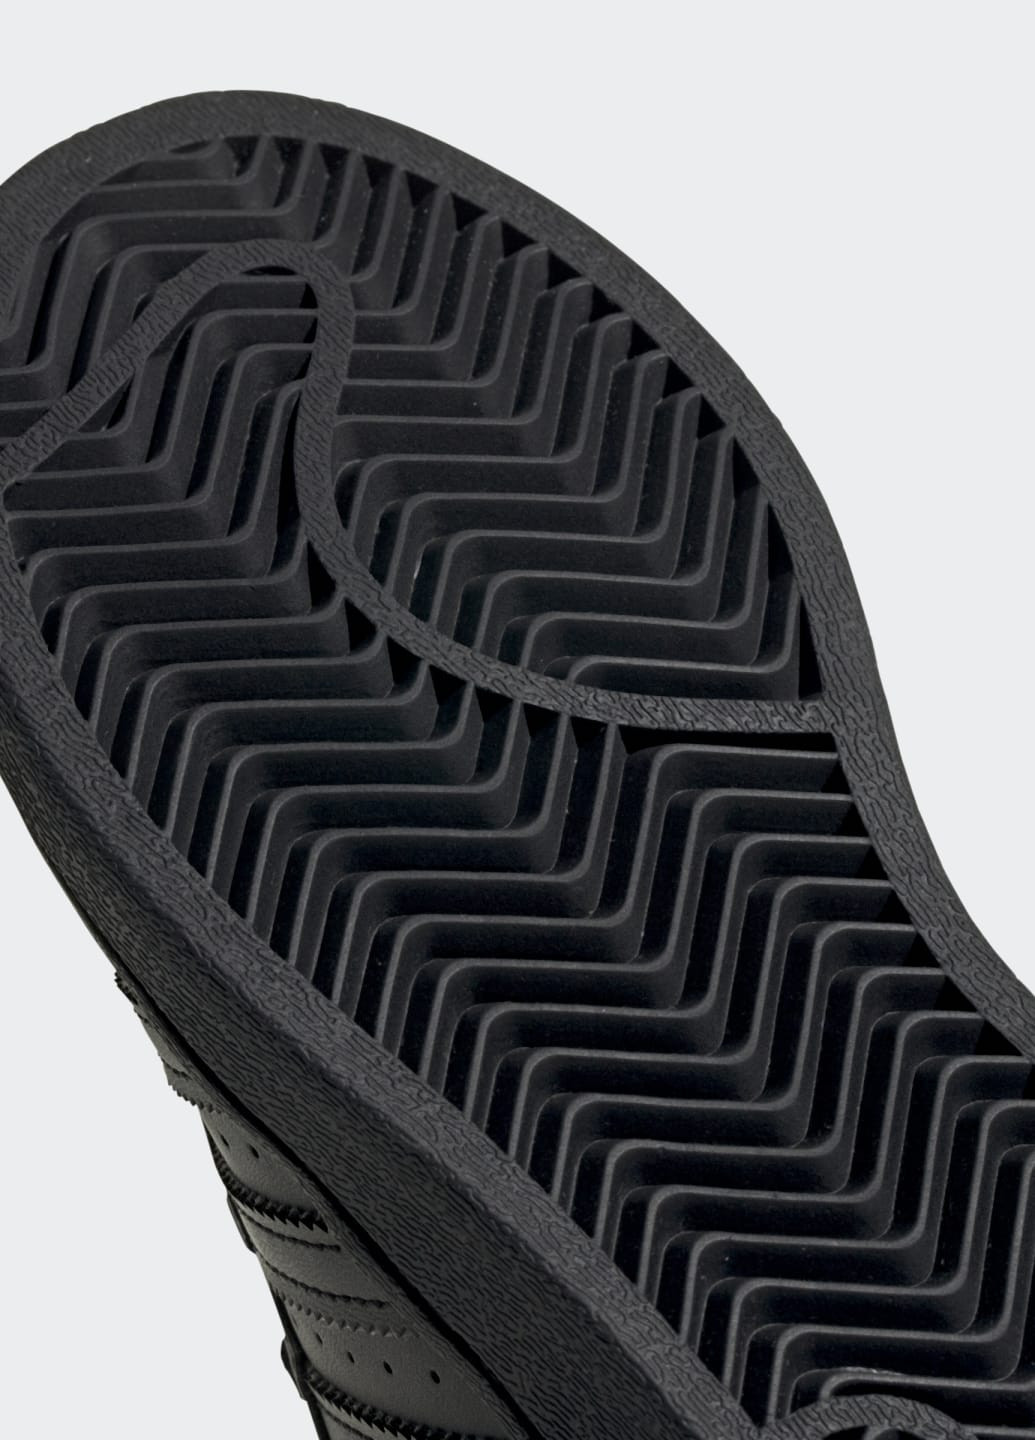 Черные кроссовки superstar adidas